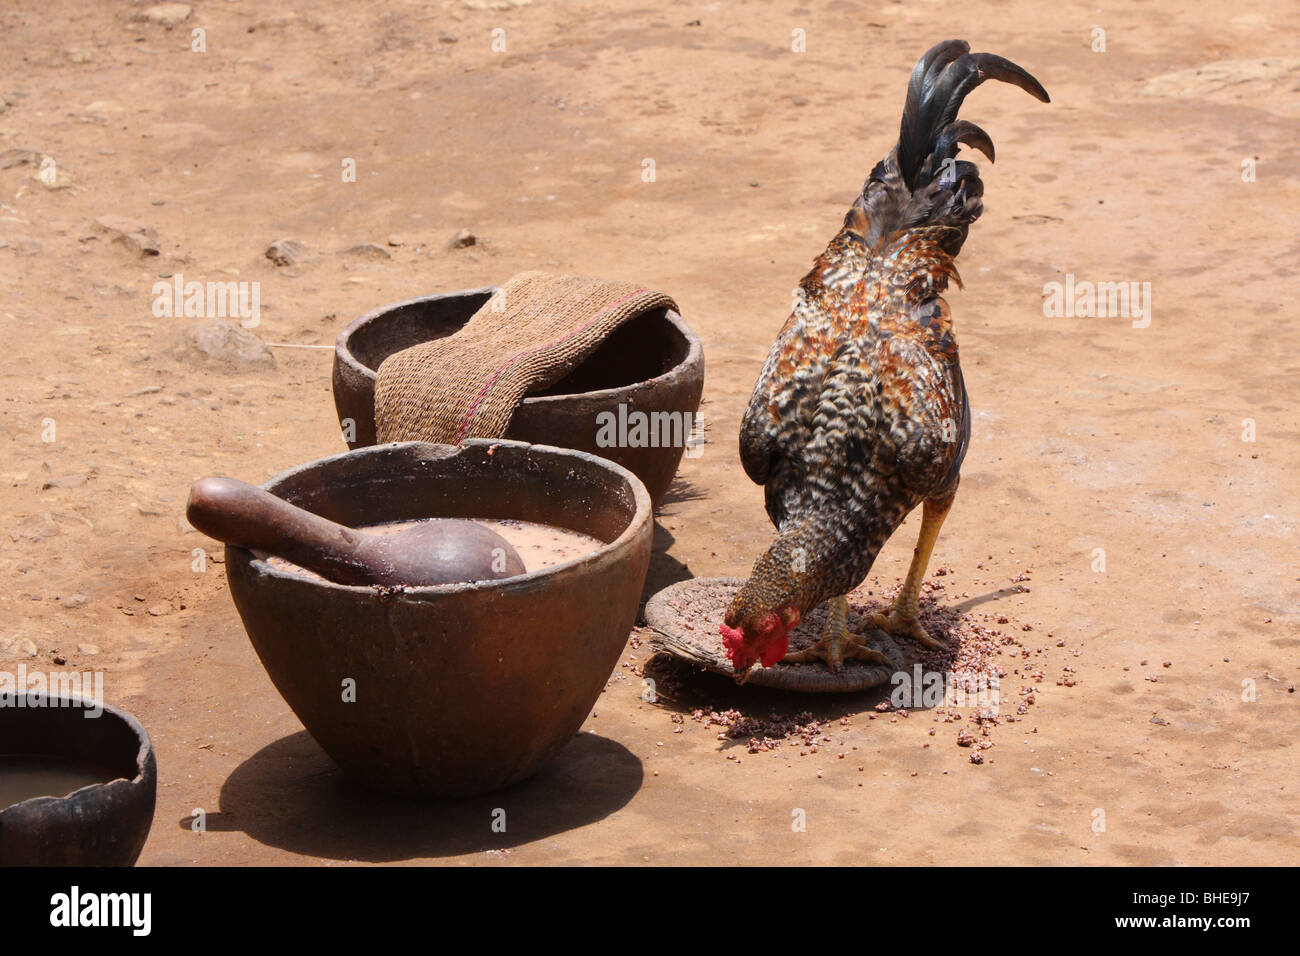 Una gallina mangia orzo che è un residuo del sottoprodotto della tradizionale birra prodotta dalla popolazione Zulu in un villaggio tradizionale Foto Stock